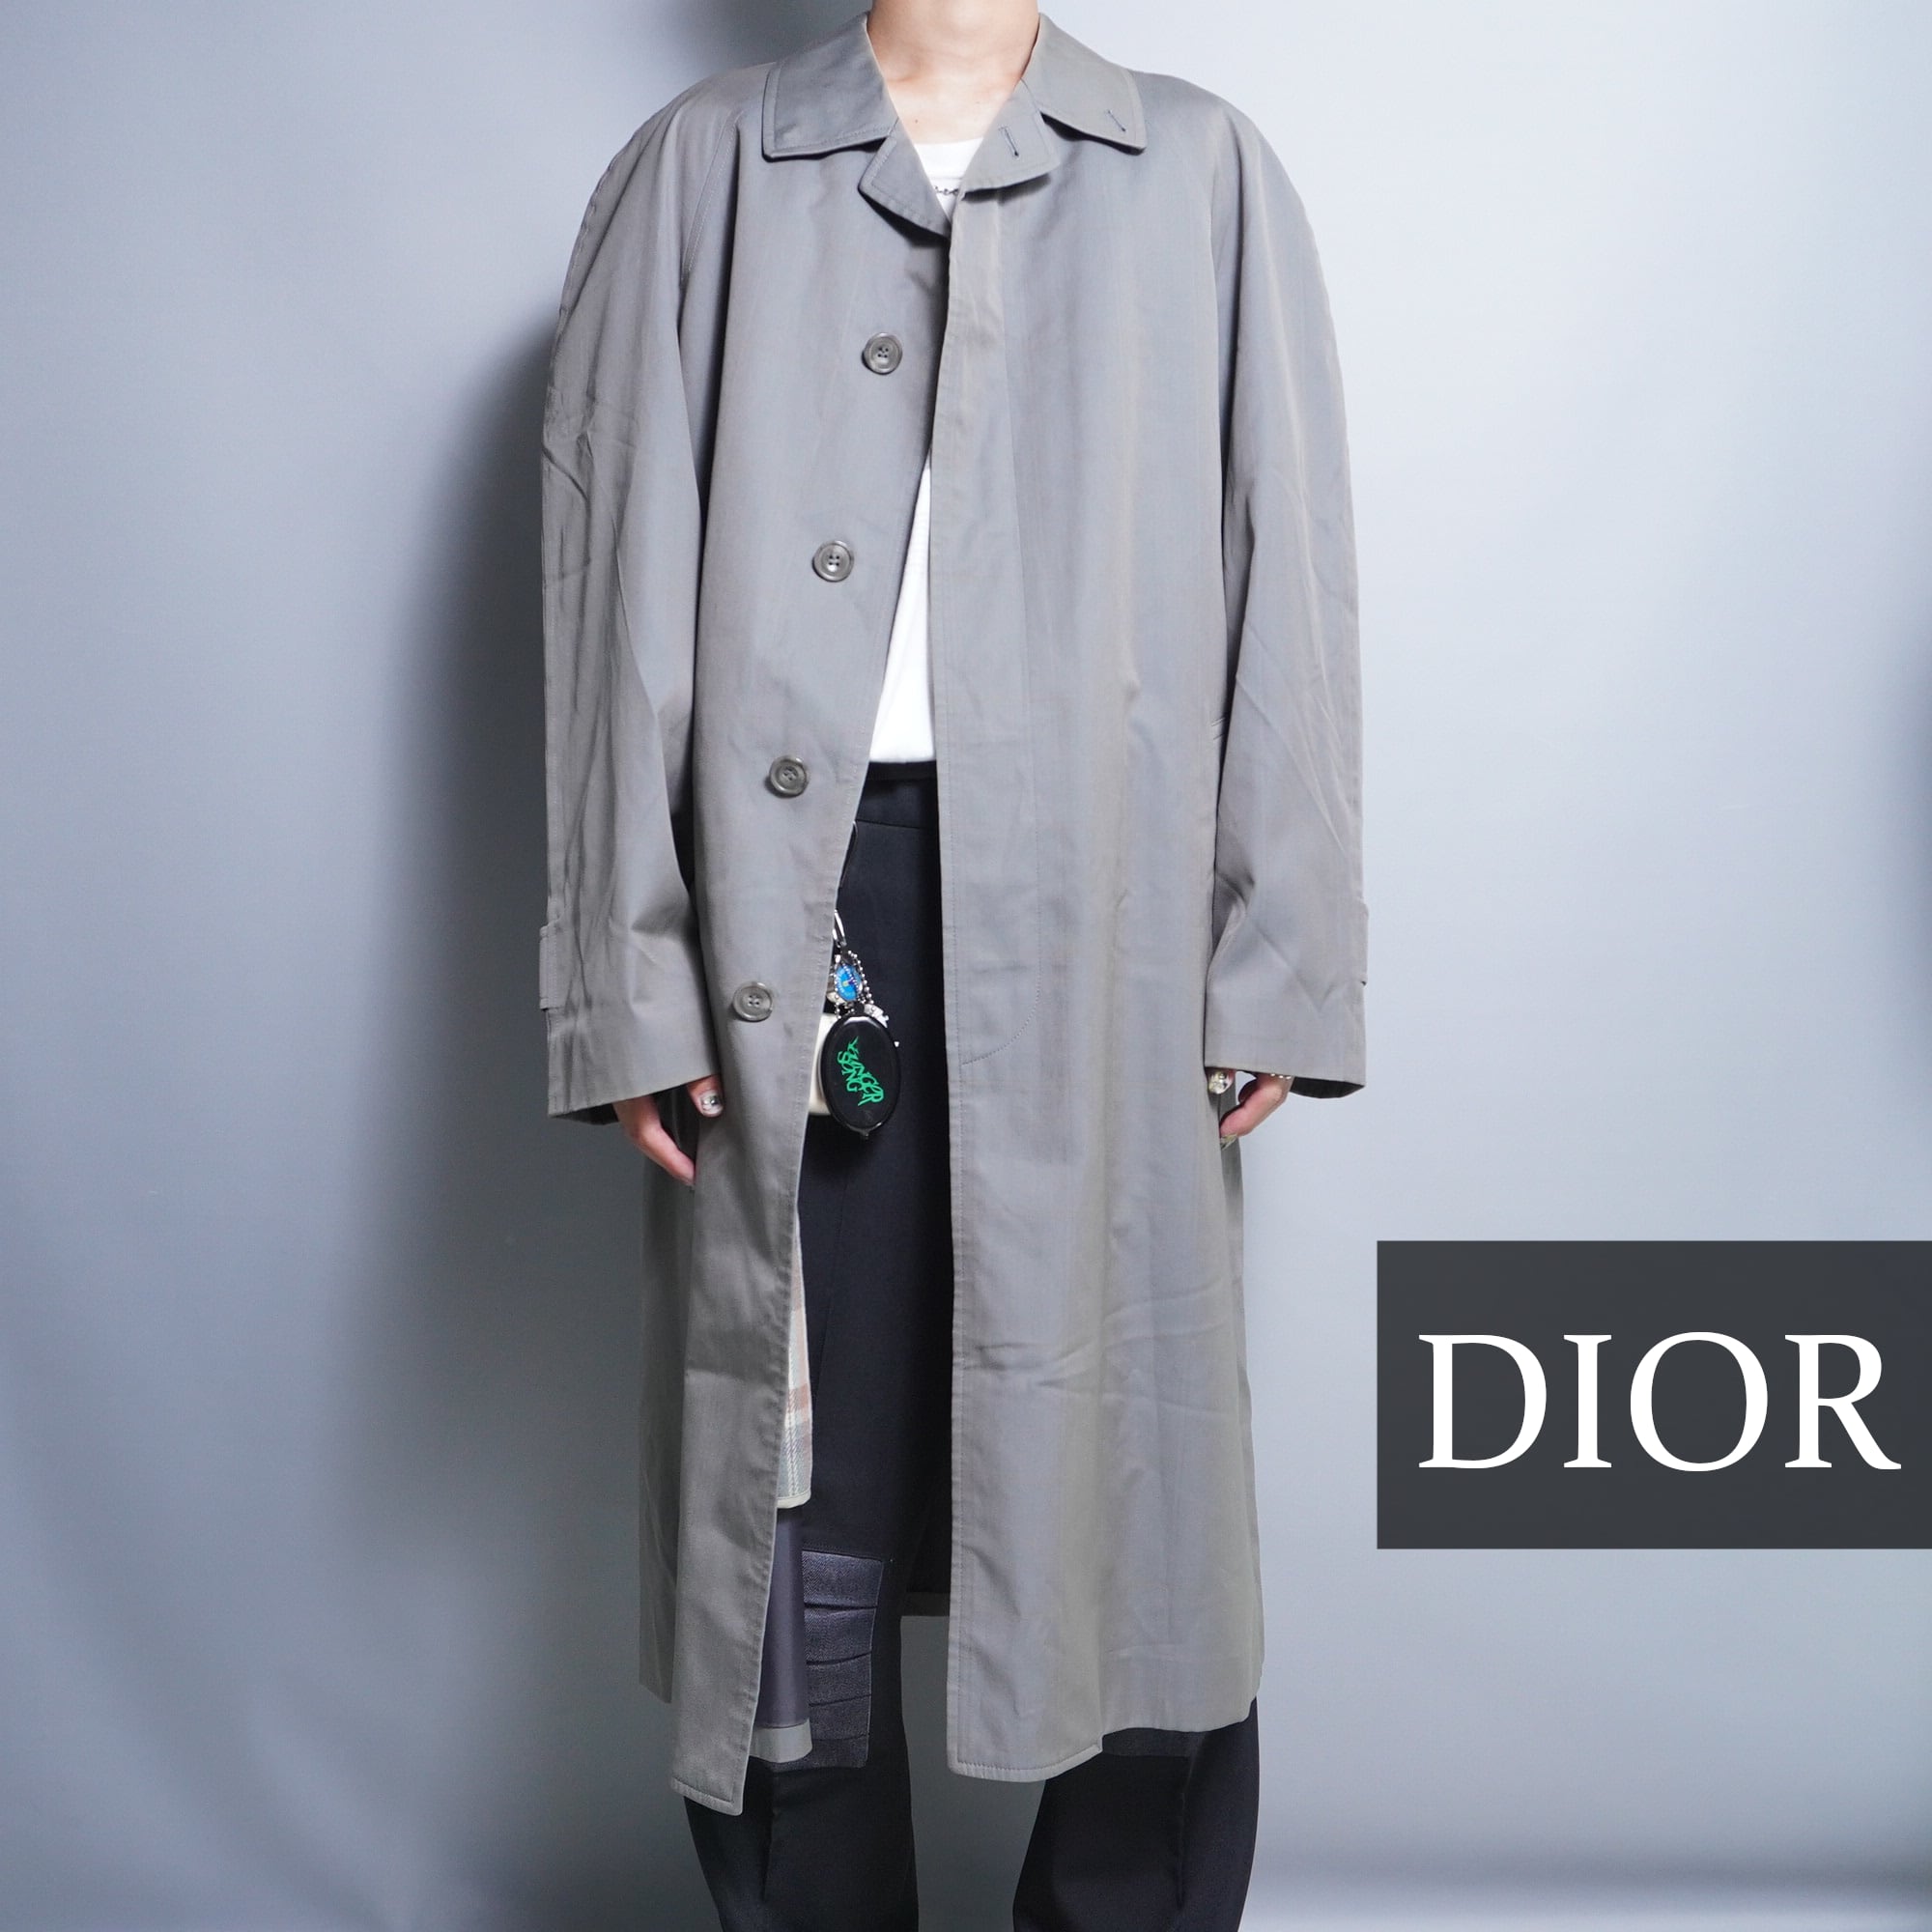 Christian Dior ステンカラーコート ダウン ライナー付き - www ...